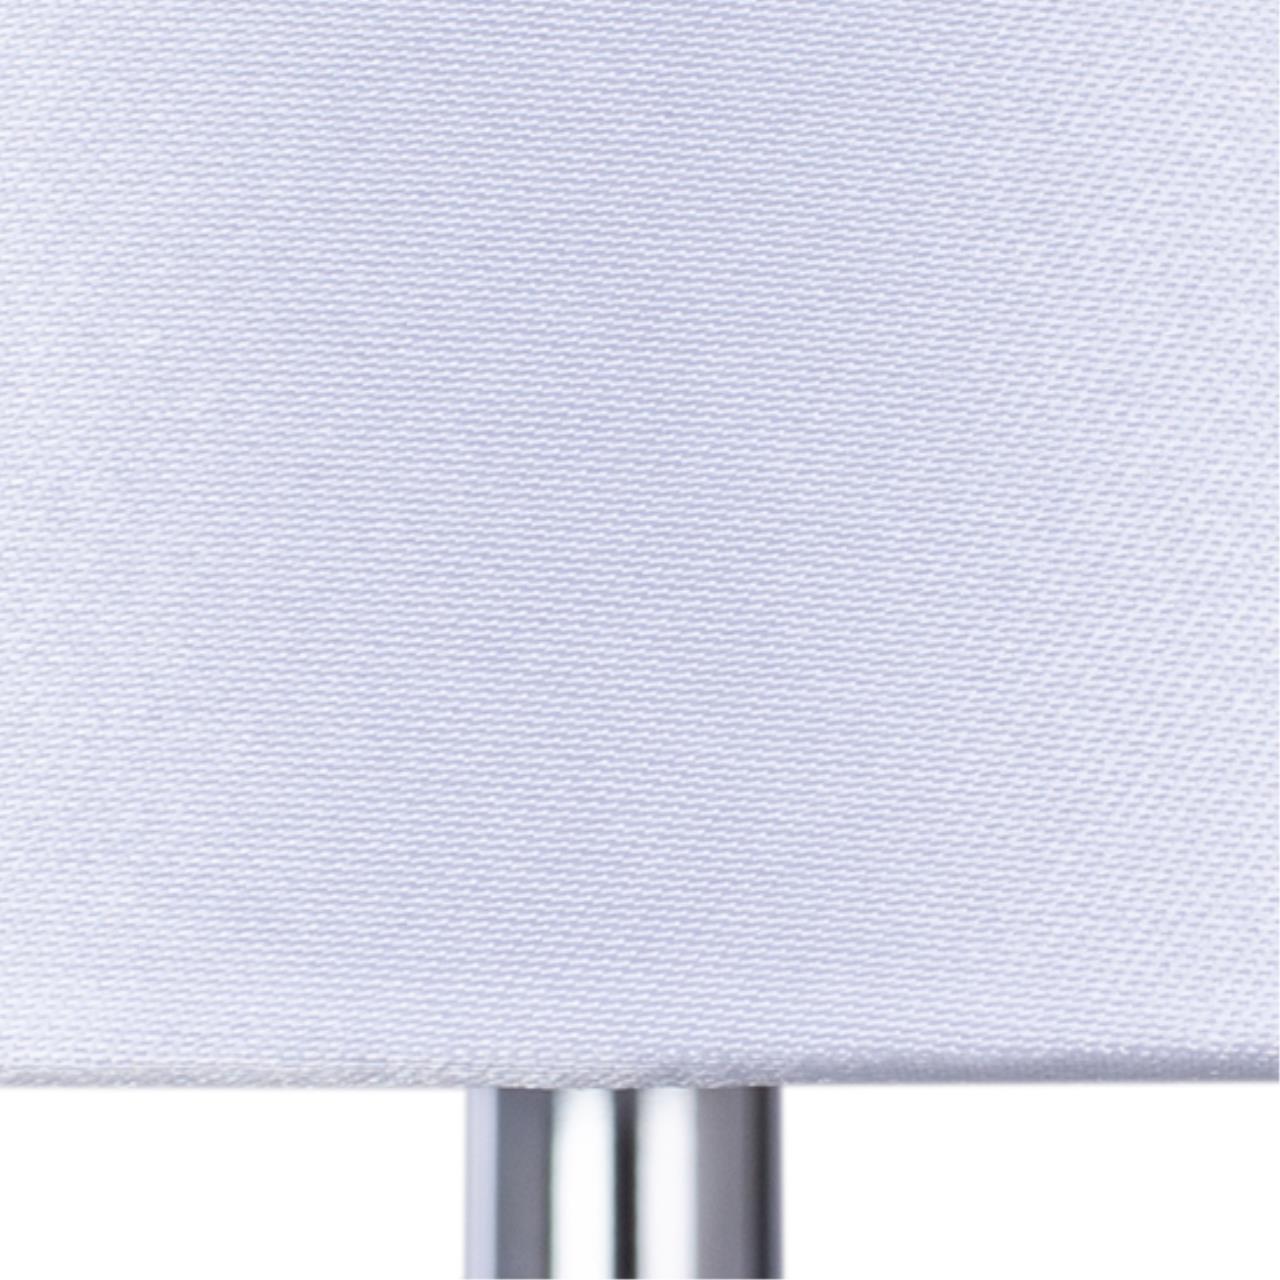 Интерьерная настольная лампа Arte lamp A4019LT-1CC СВЕТИЛЬНИК НАСТОЛЬНЫЙ